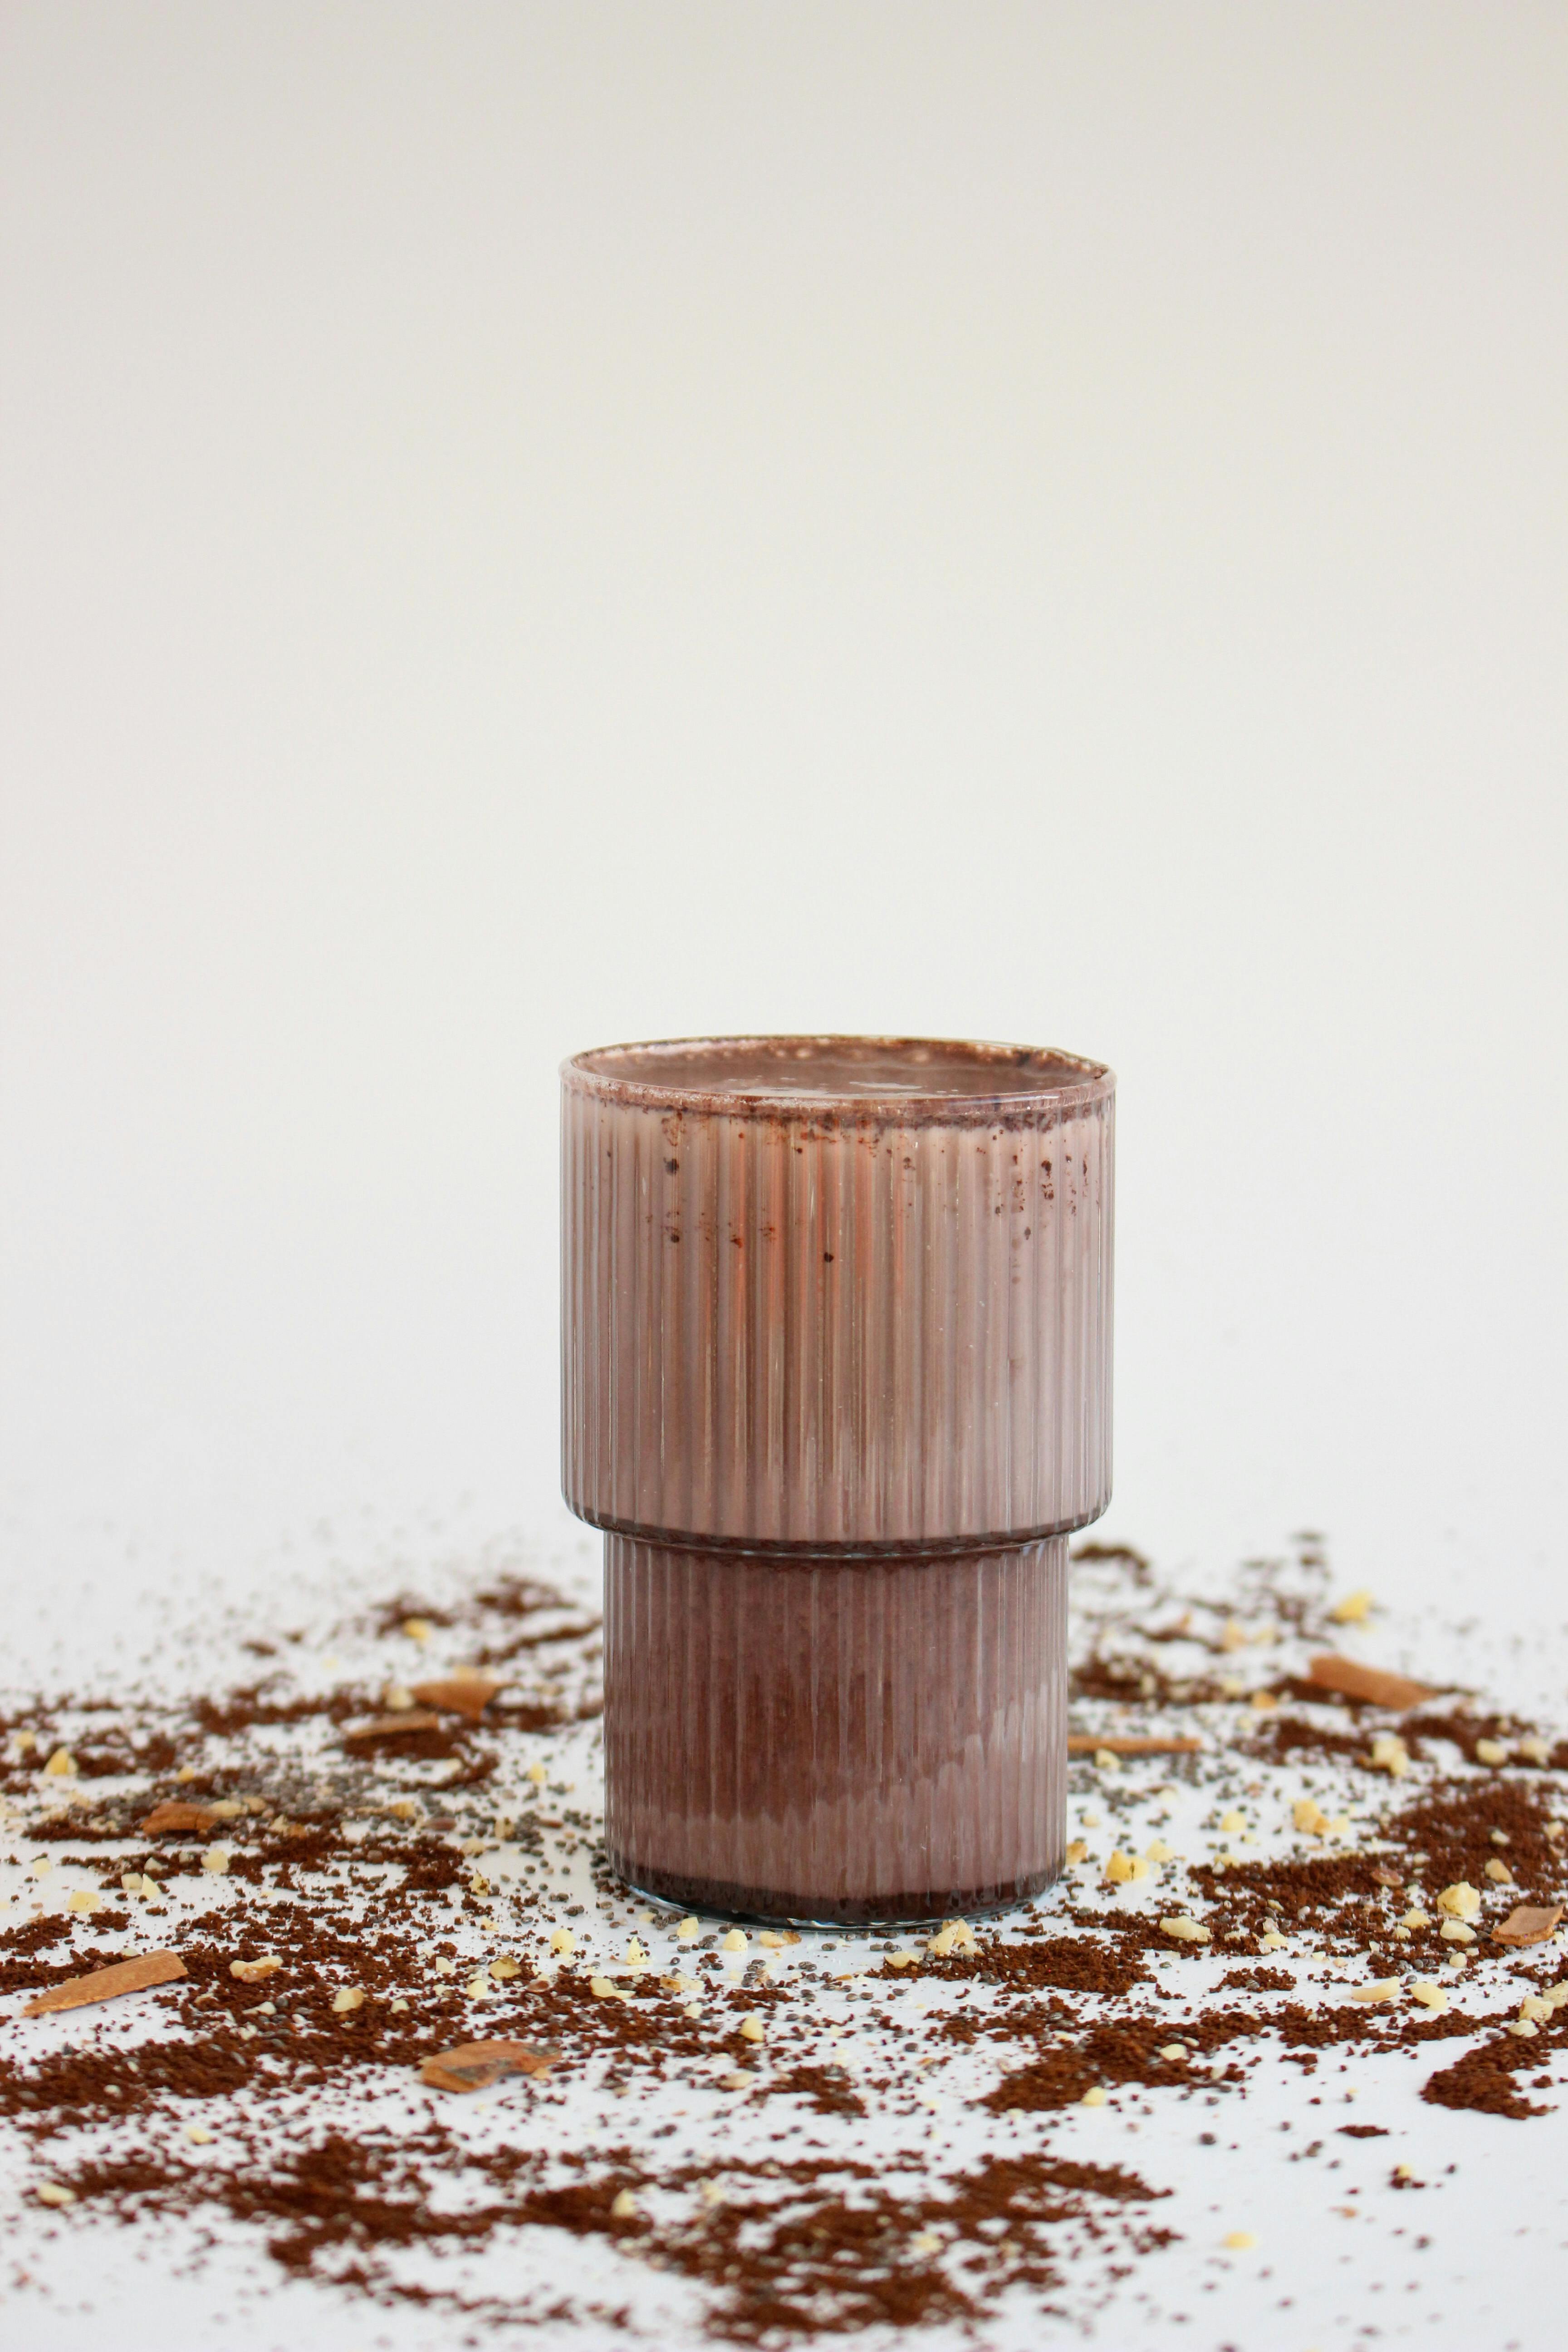 copper cocoa powder shaker